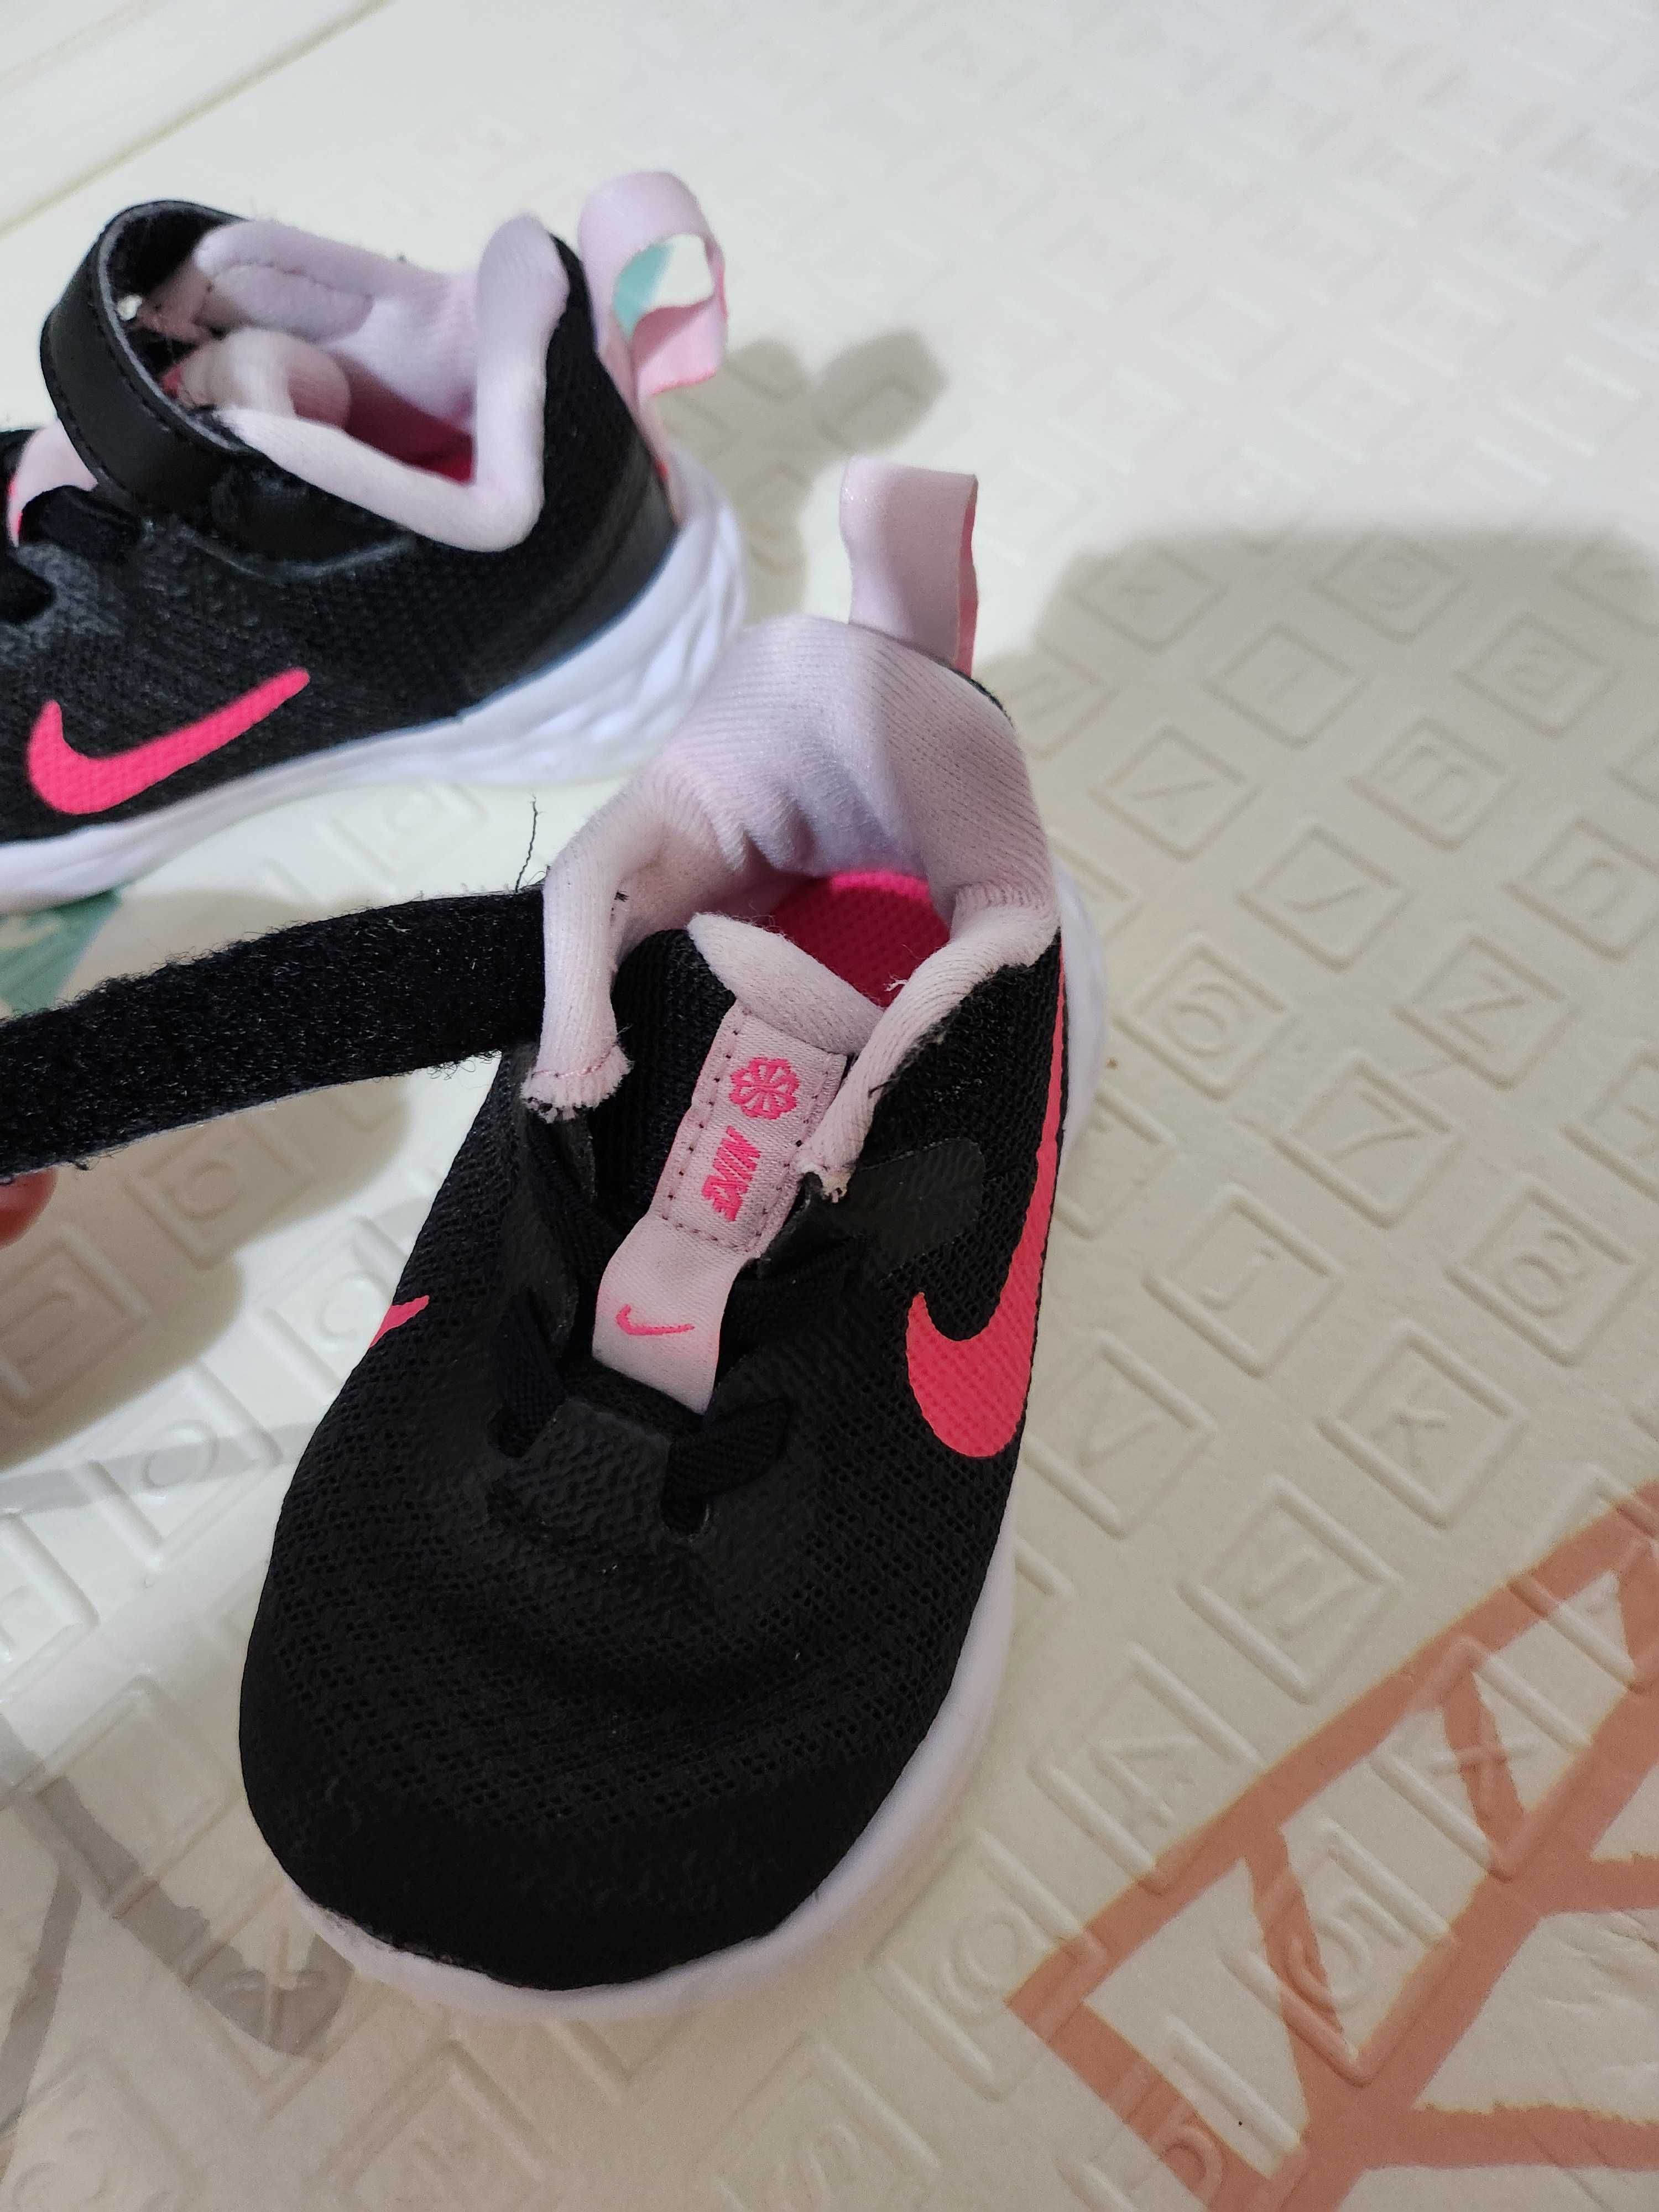 Бебешки обувки Nike 17 и 19.5